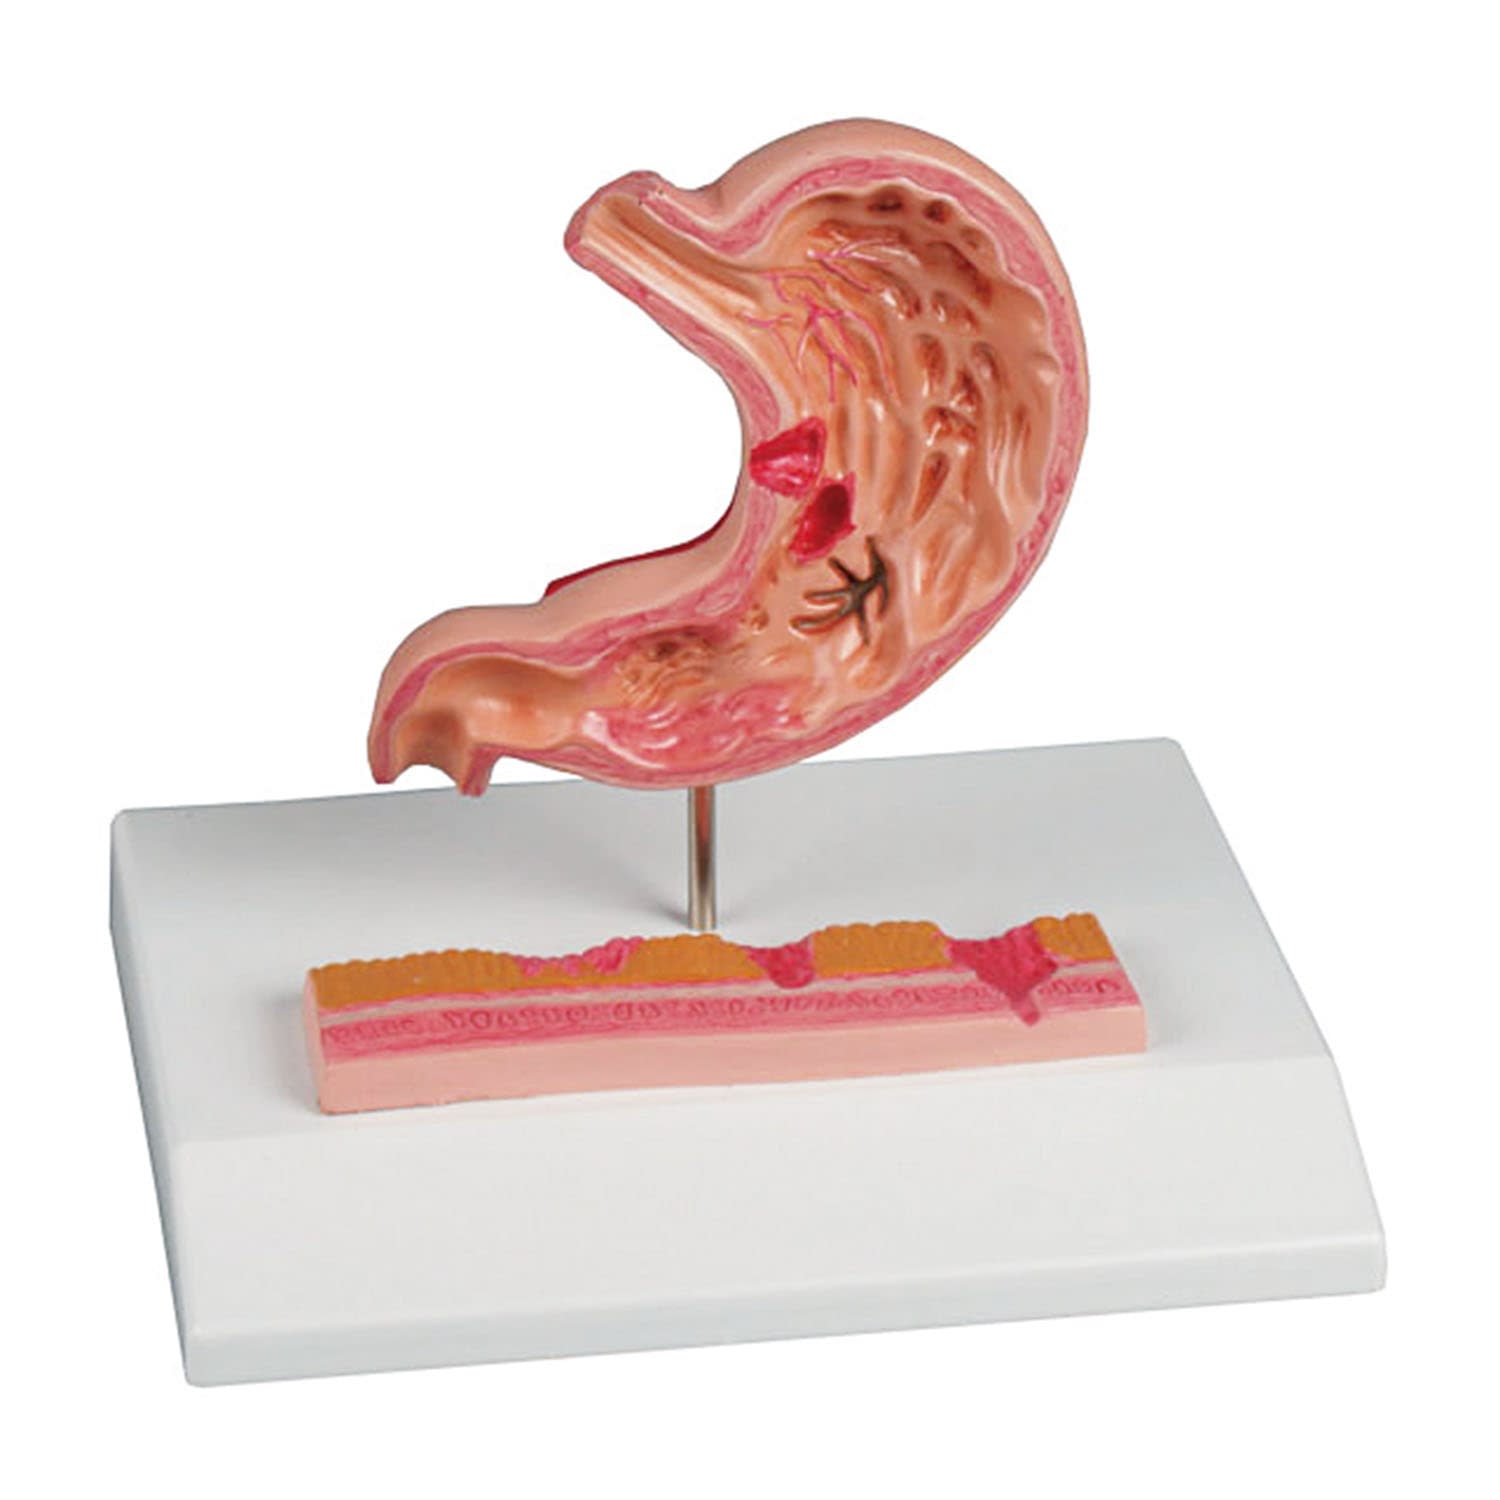 (24-5097-00)胃潰瘍モデル K217 ｲｶｲﾖｳﾓﾃﾞﾙ(エルラージーマー社)【1個単位】【2019年カタログ商品】